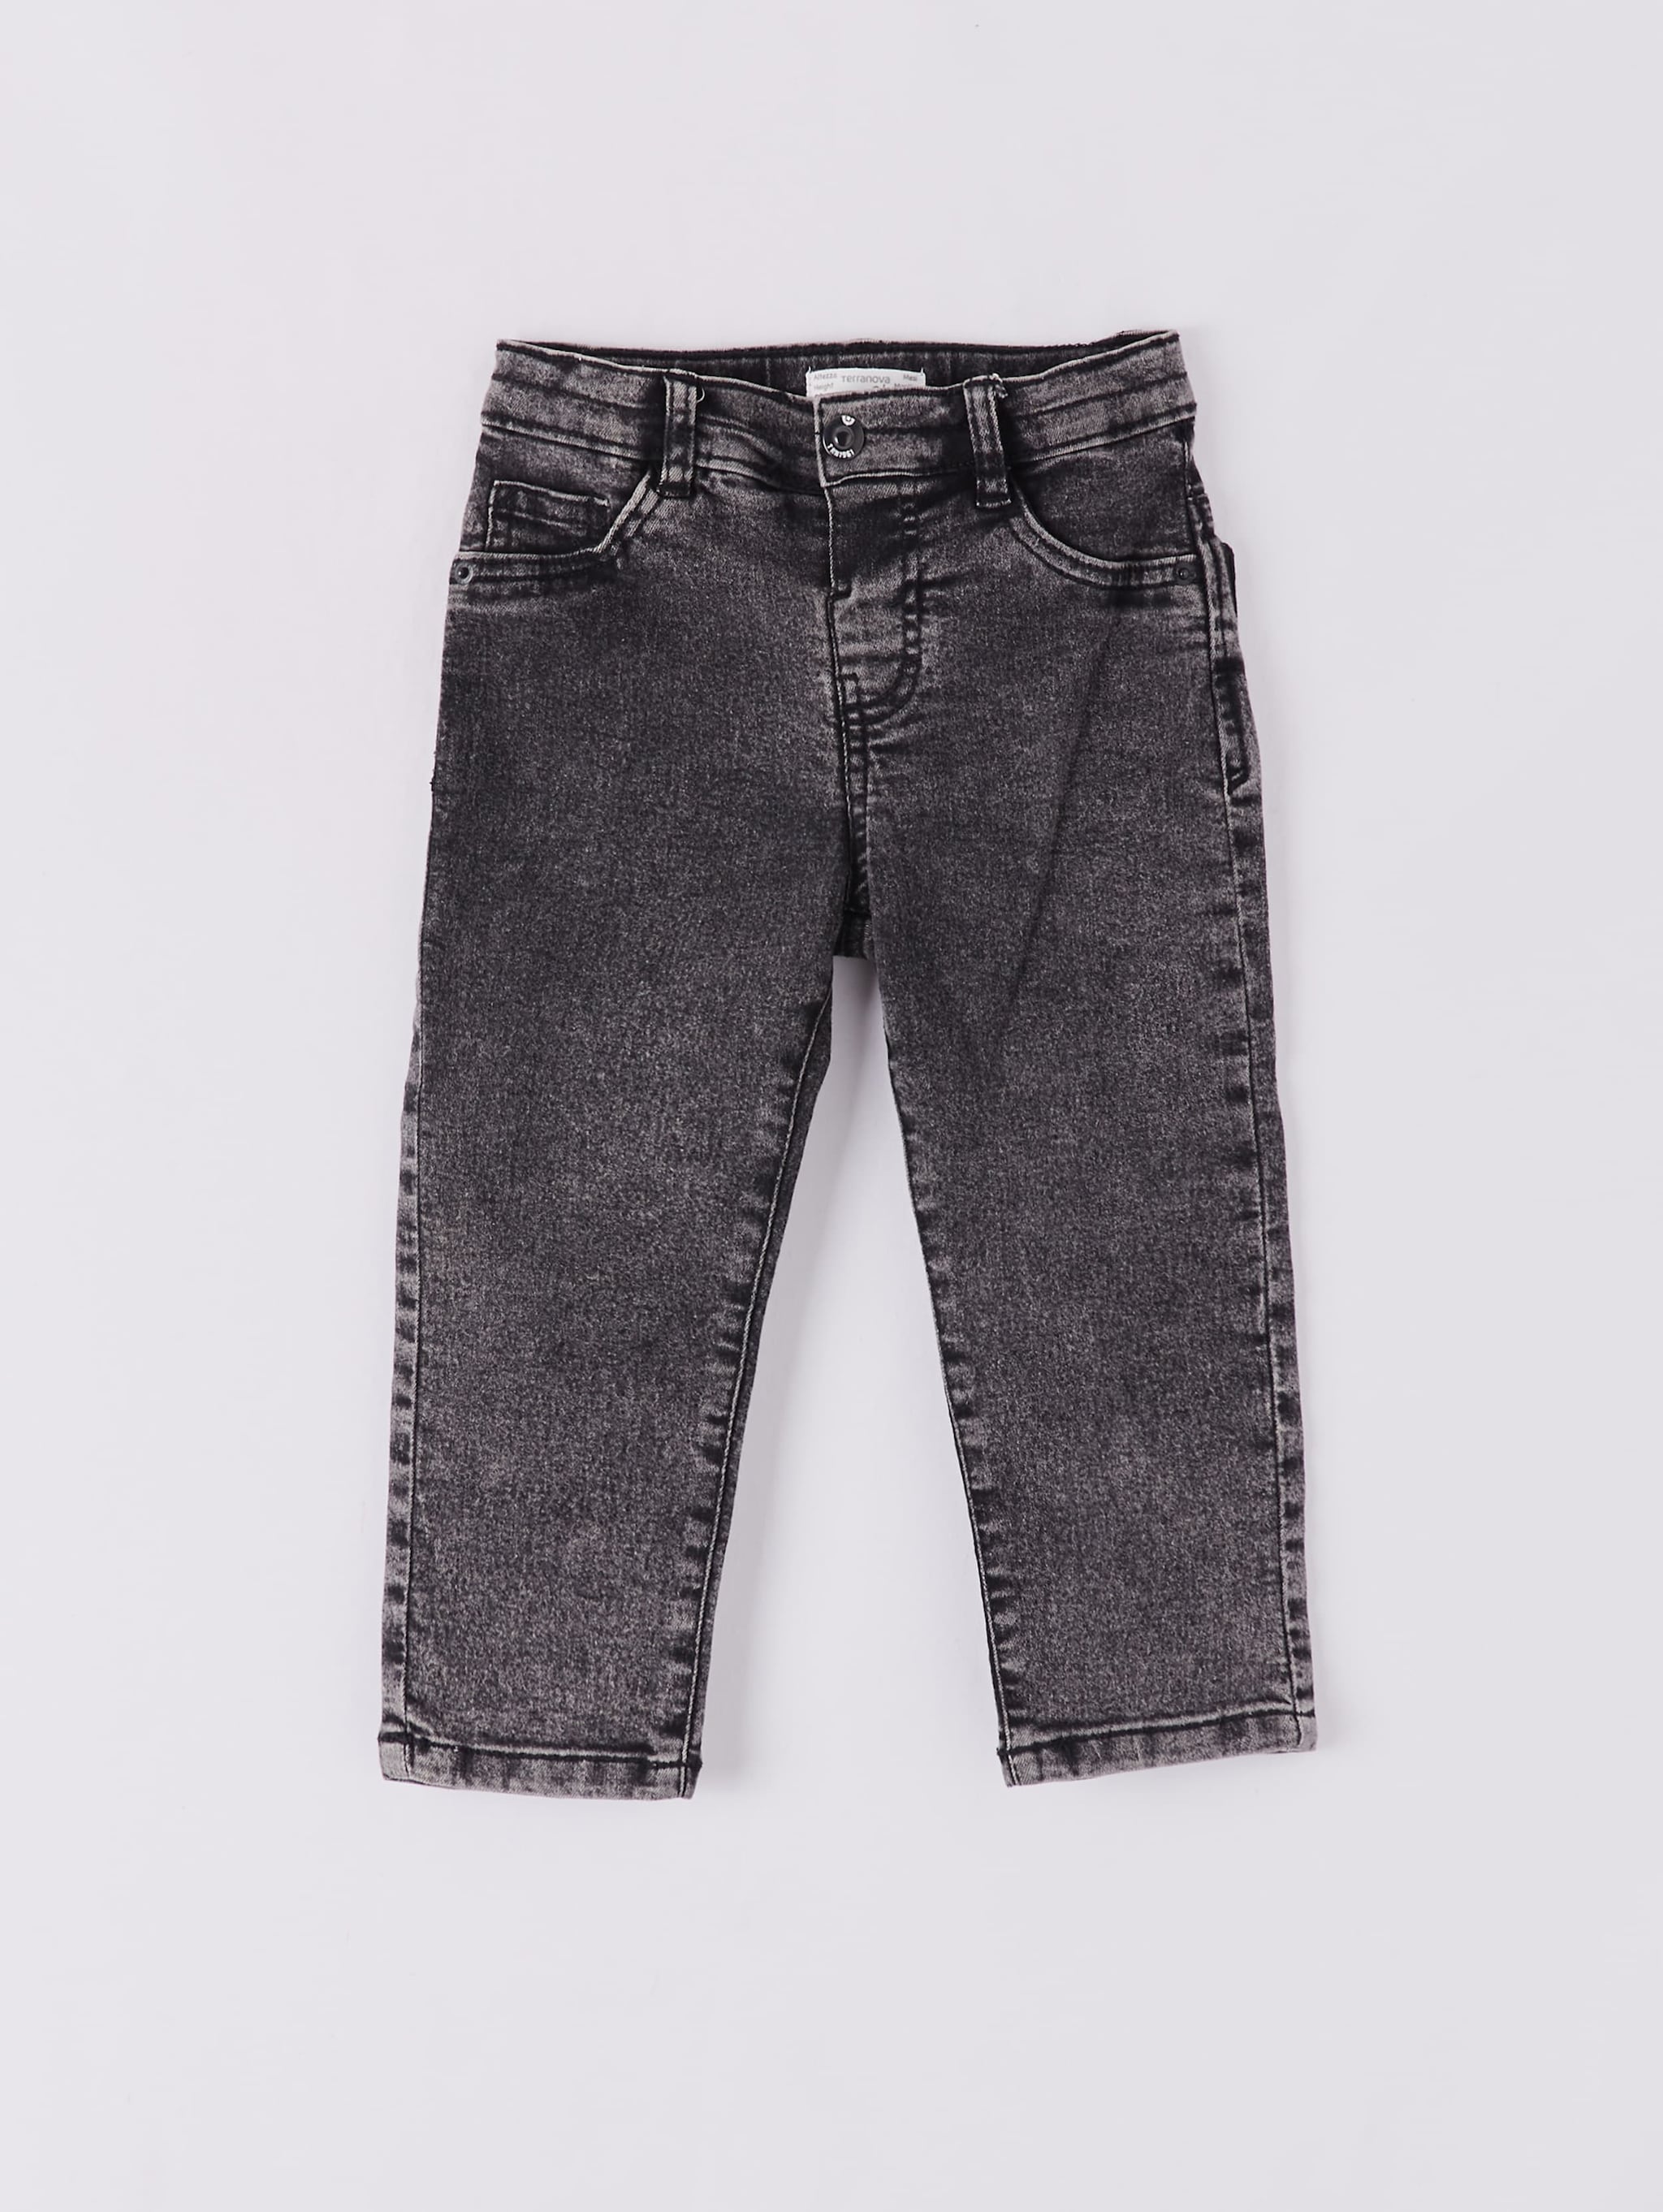 black jeans for infant boy